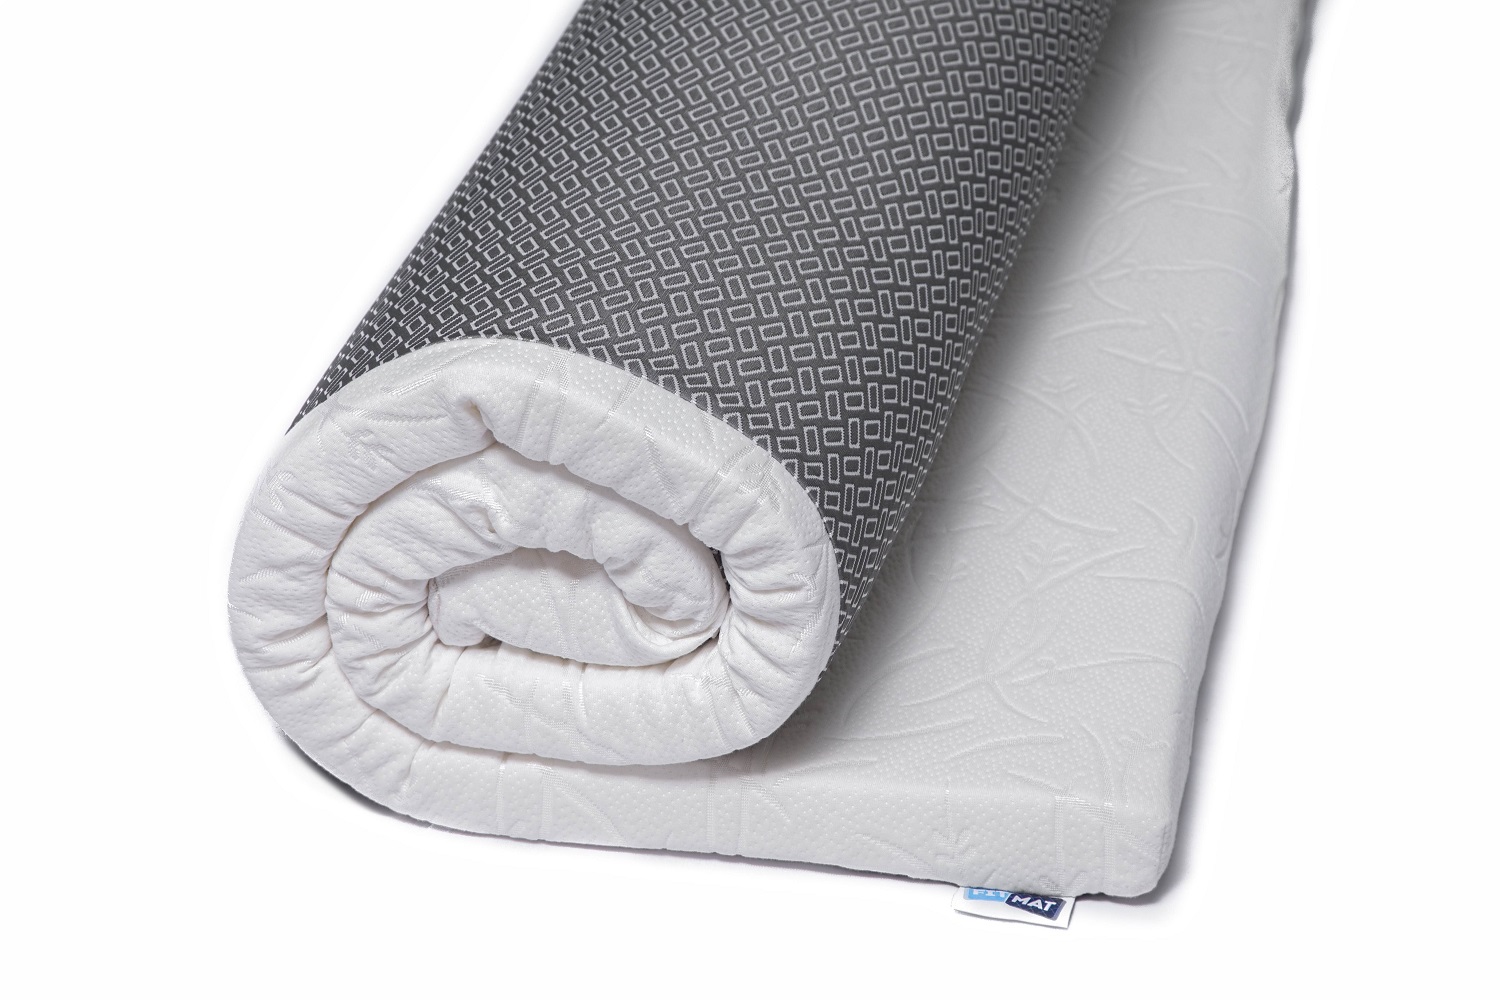 mattress topper with zipper